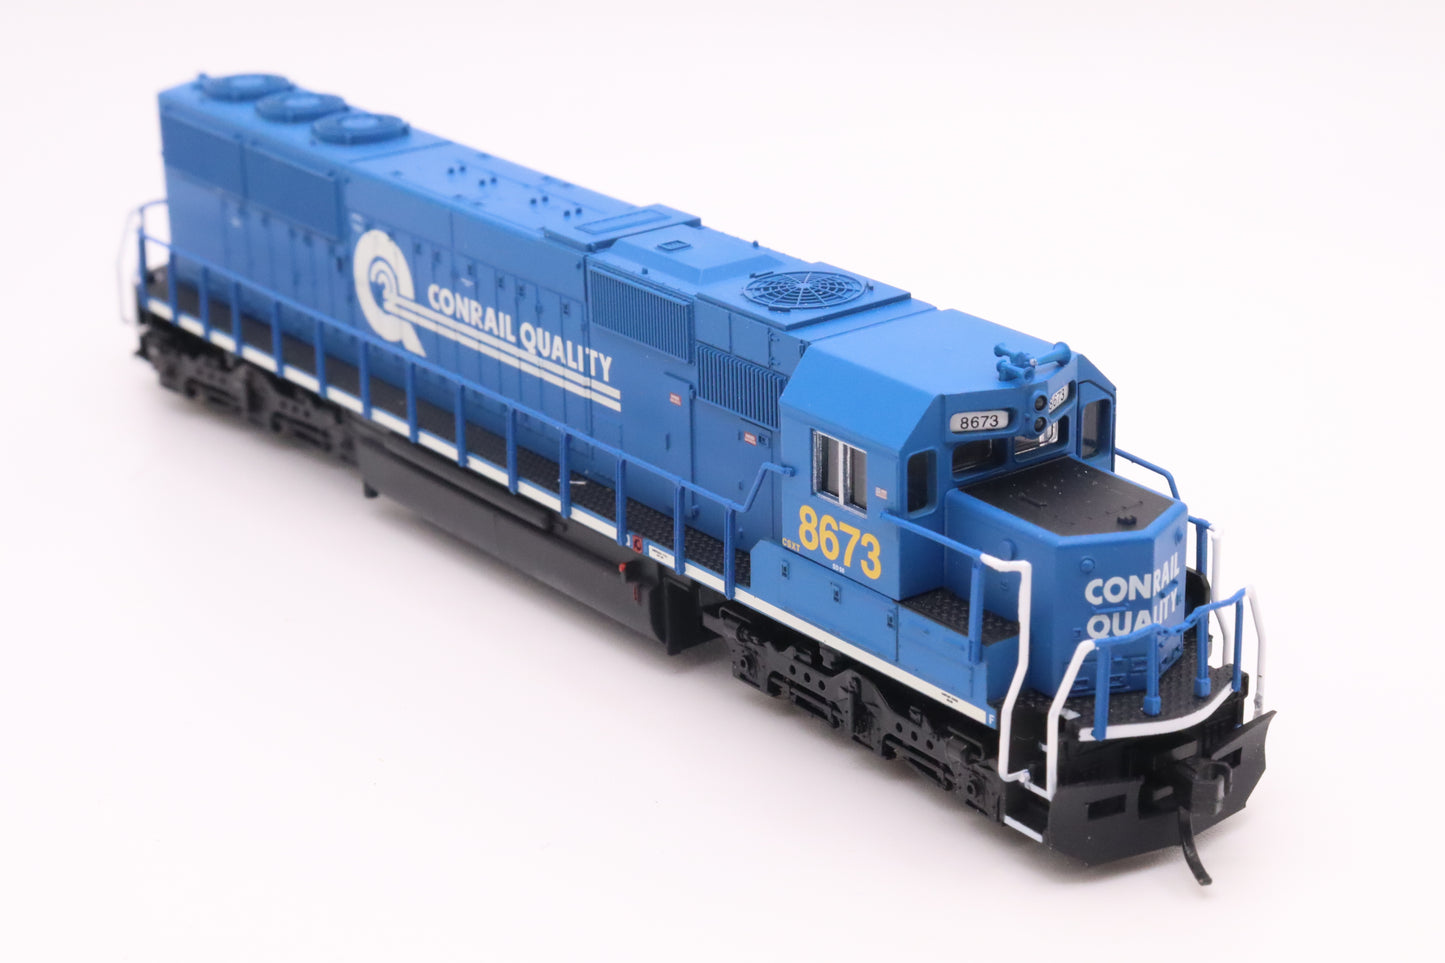 ATL-49315 - SD-50 Locomotive - Conrail - CSX "Patch Job" - CSXT #8673